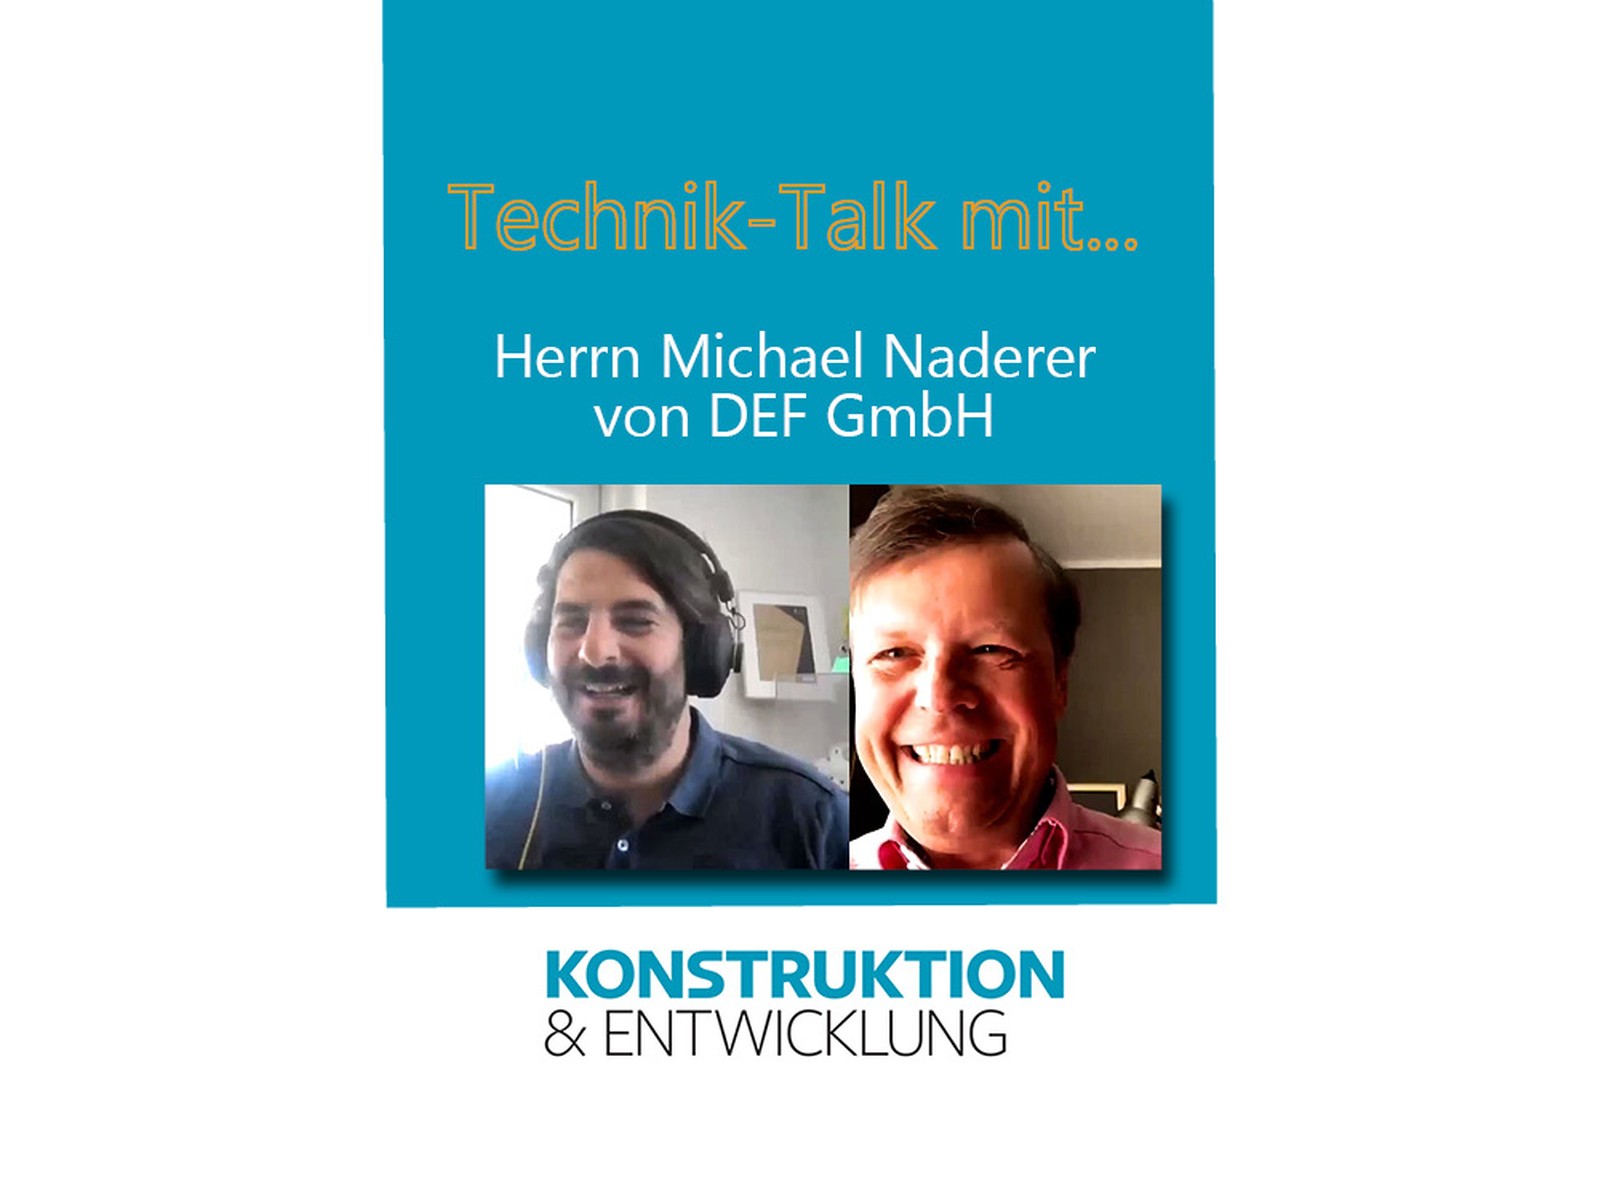 Unser Chefredakteur Erik schäfer im Technik-Talk mit Michael Naderer, CEO von DEF. Gesprächstehme war unter anderem die Innovation vfür elektrische Maschinen des Unternehmens.